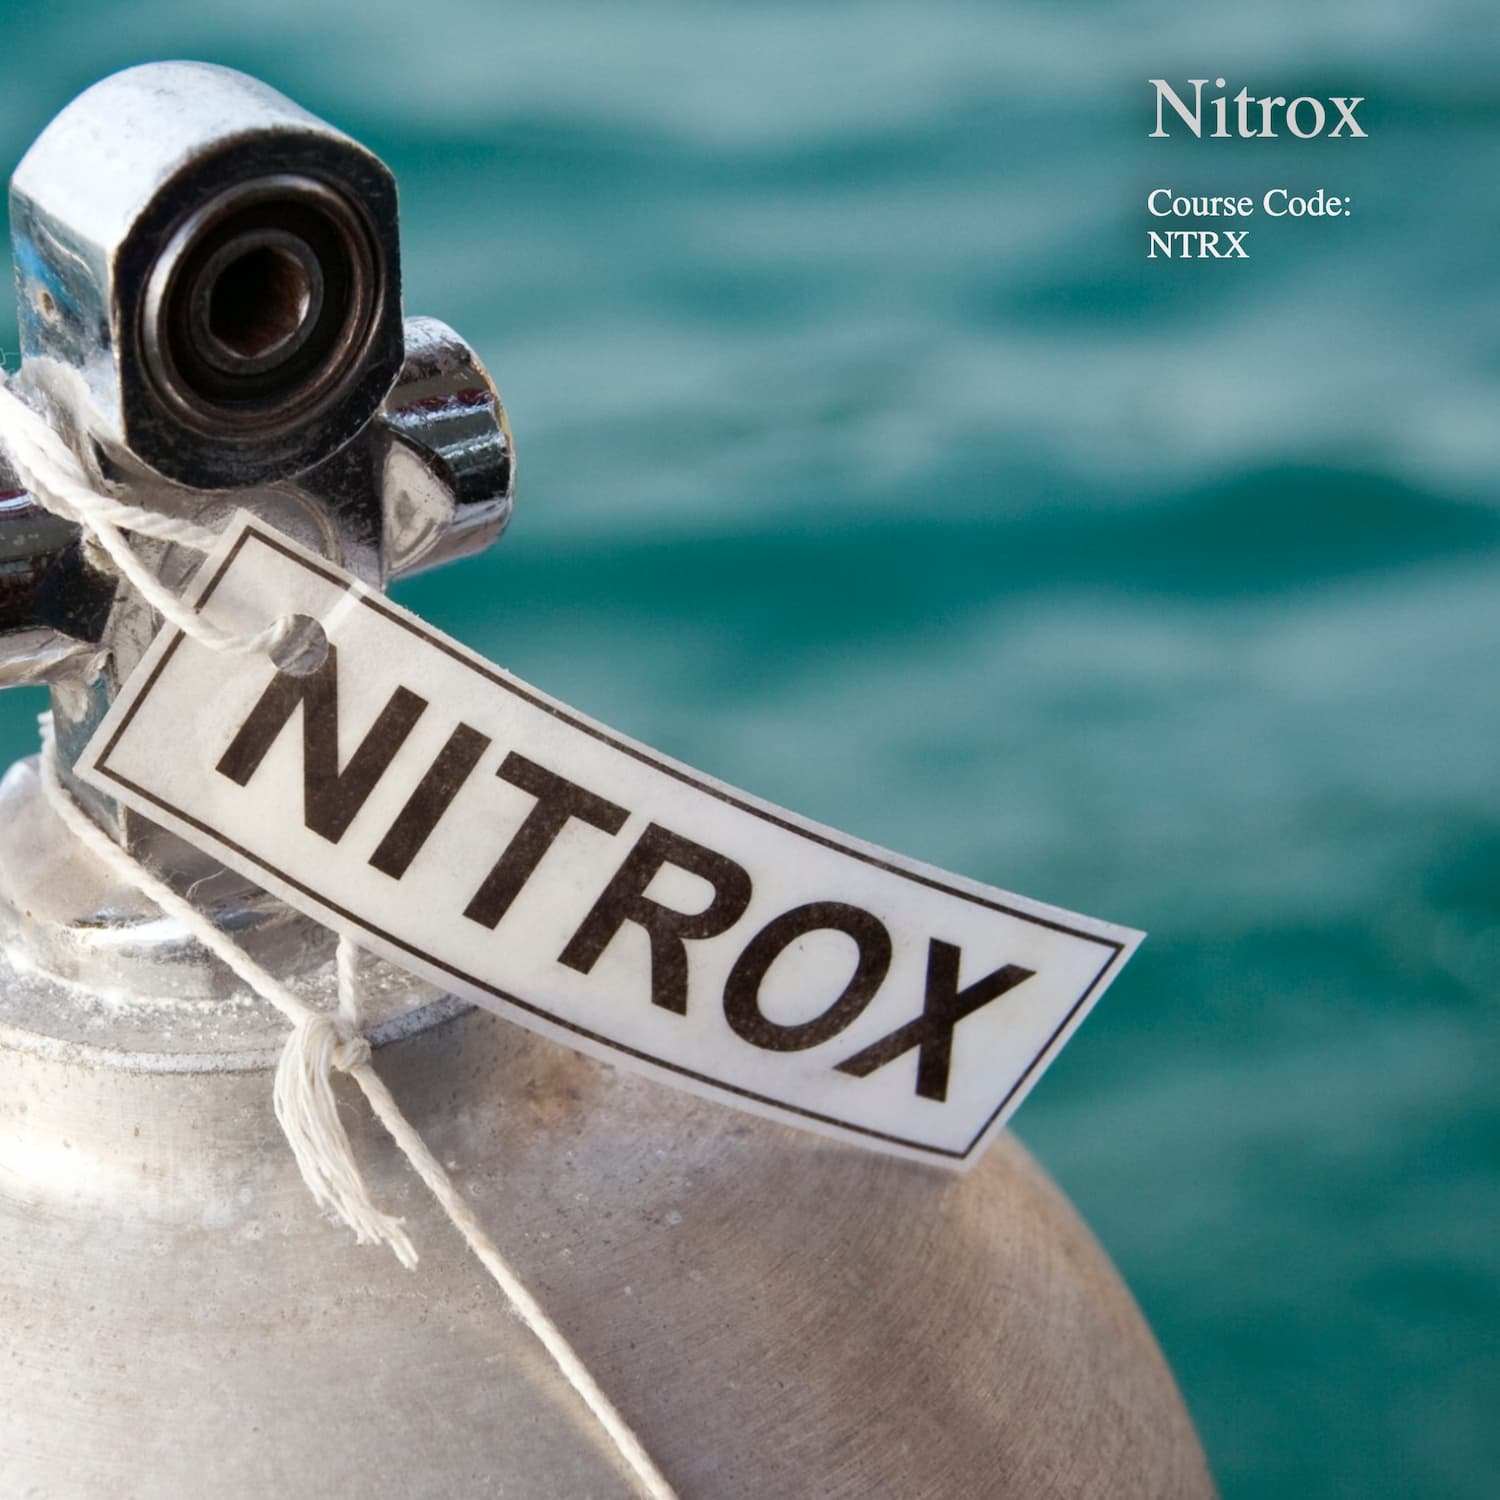 image of nitrox tank